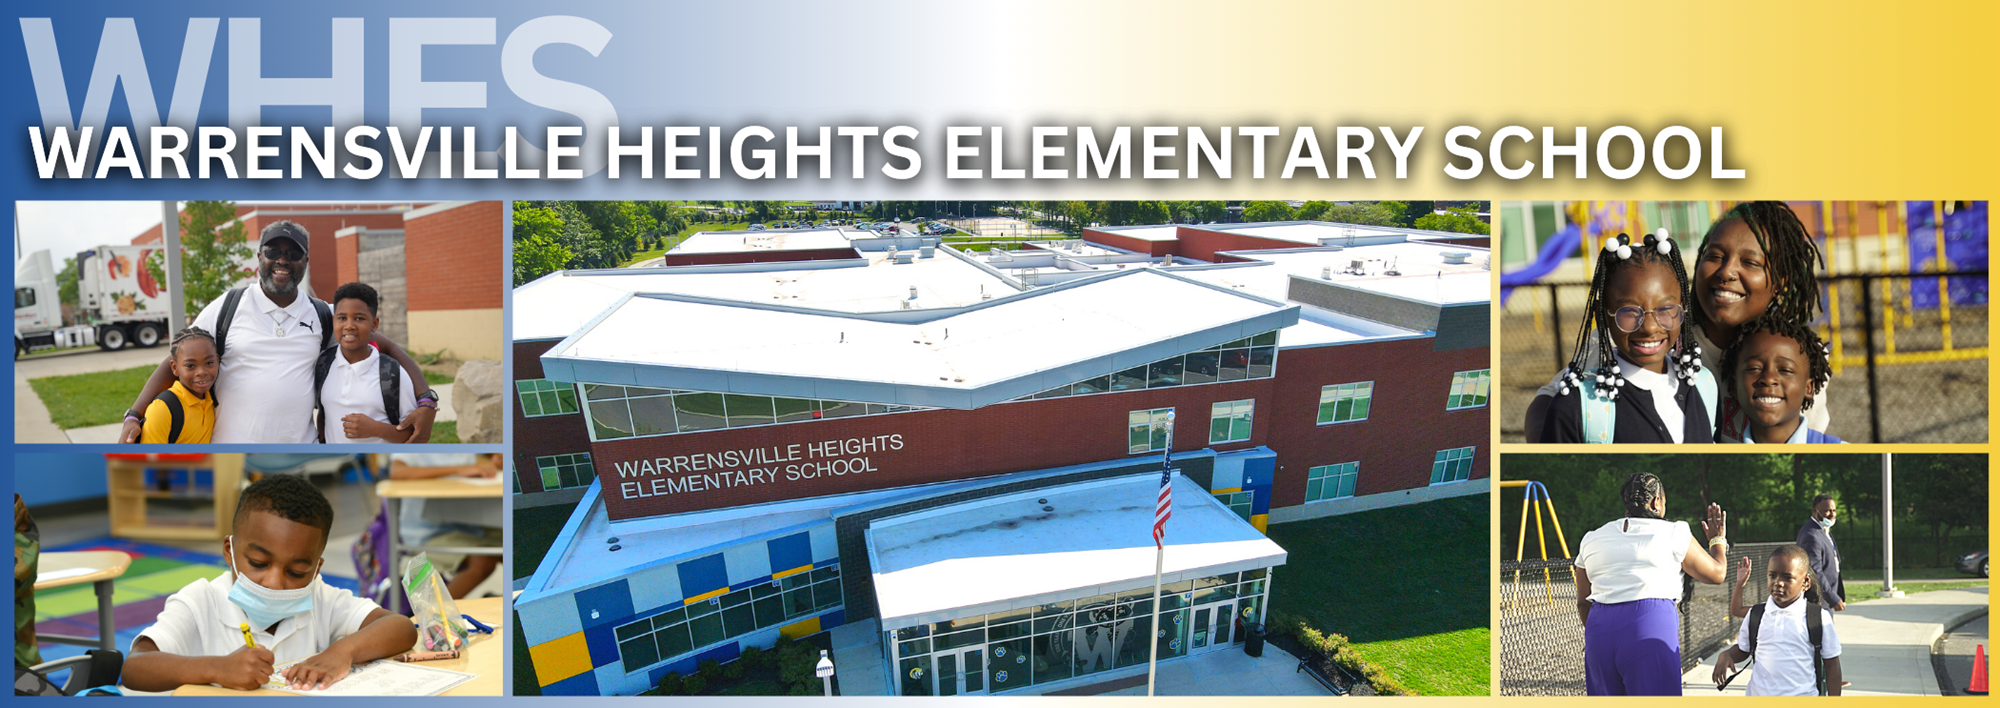 Warrensville Heights Elementary School